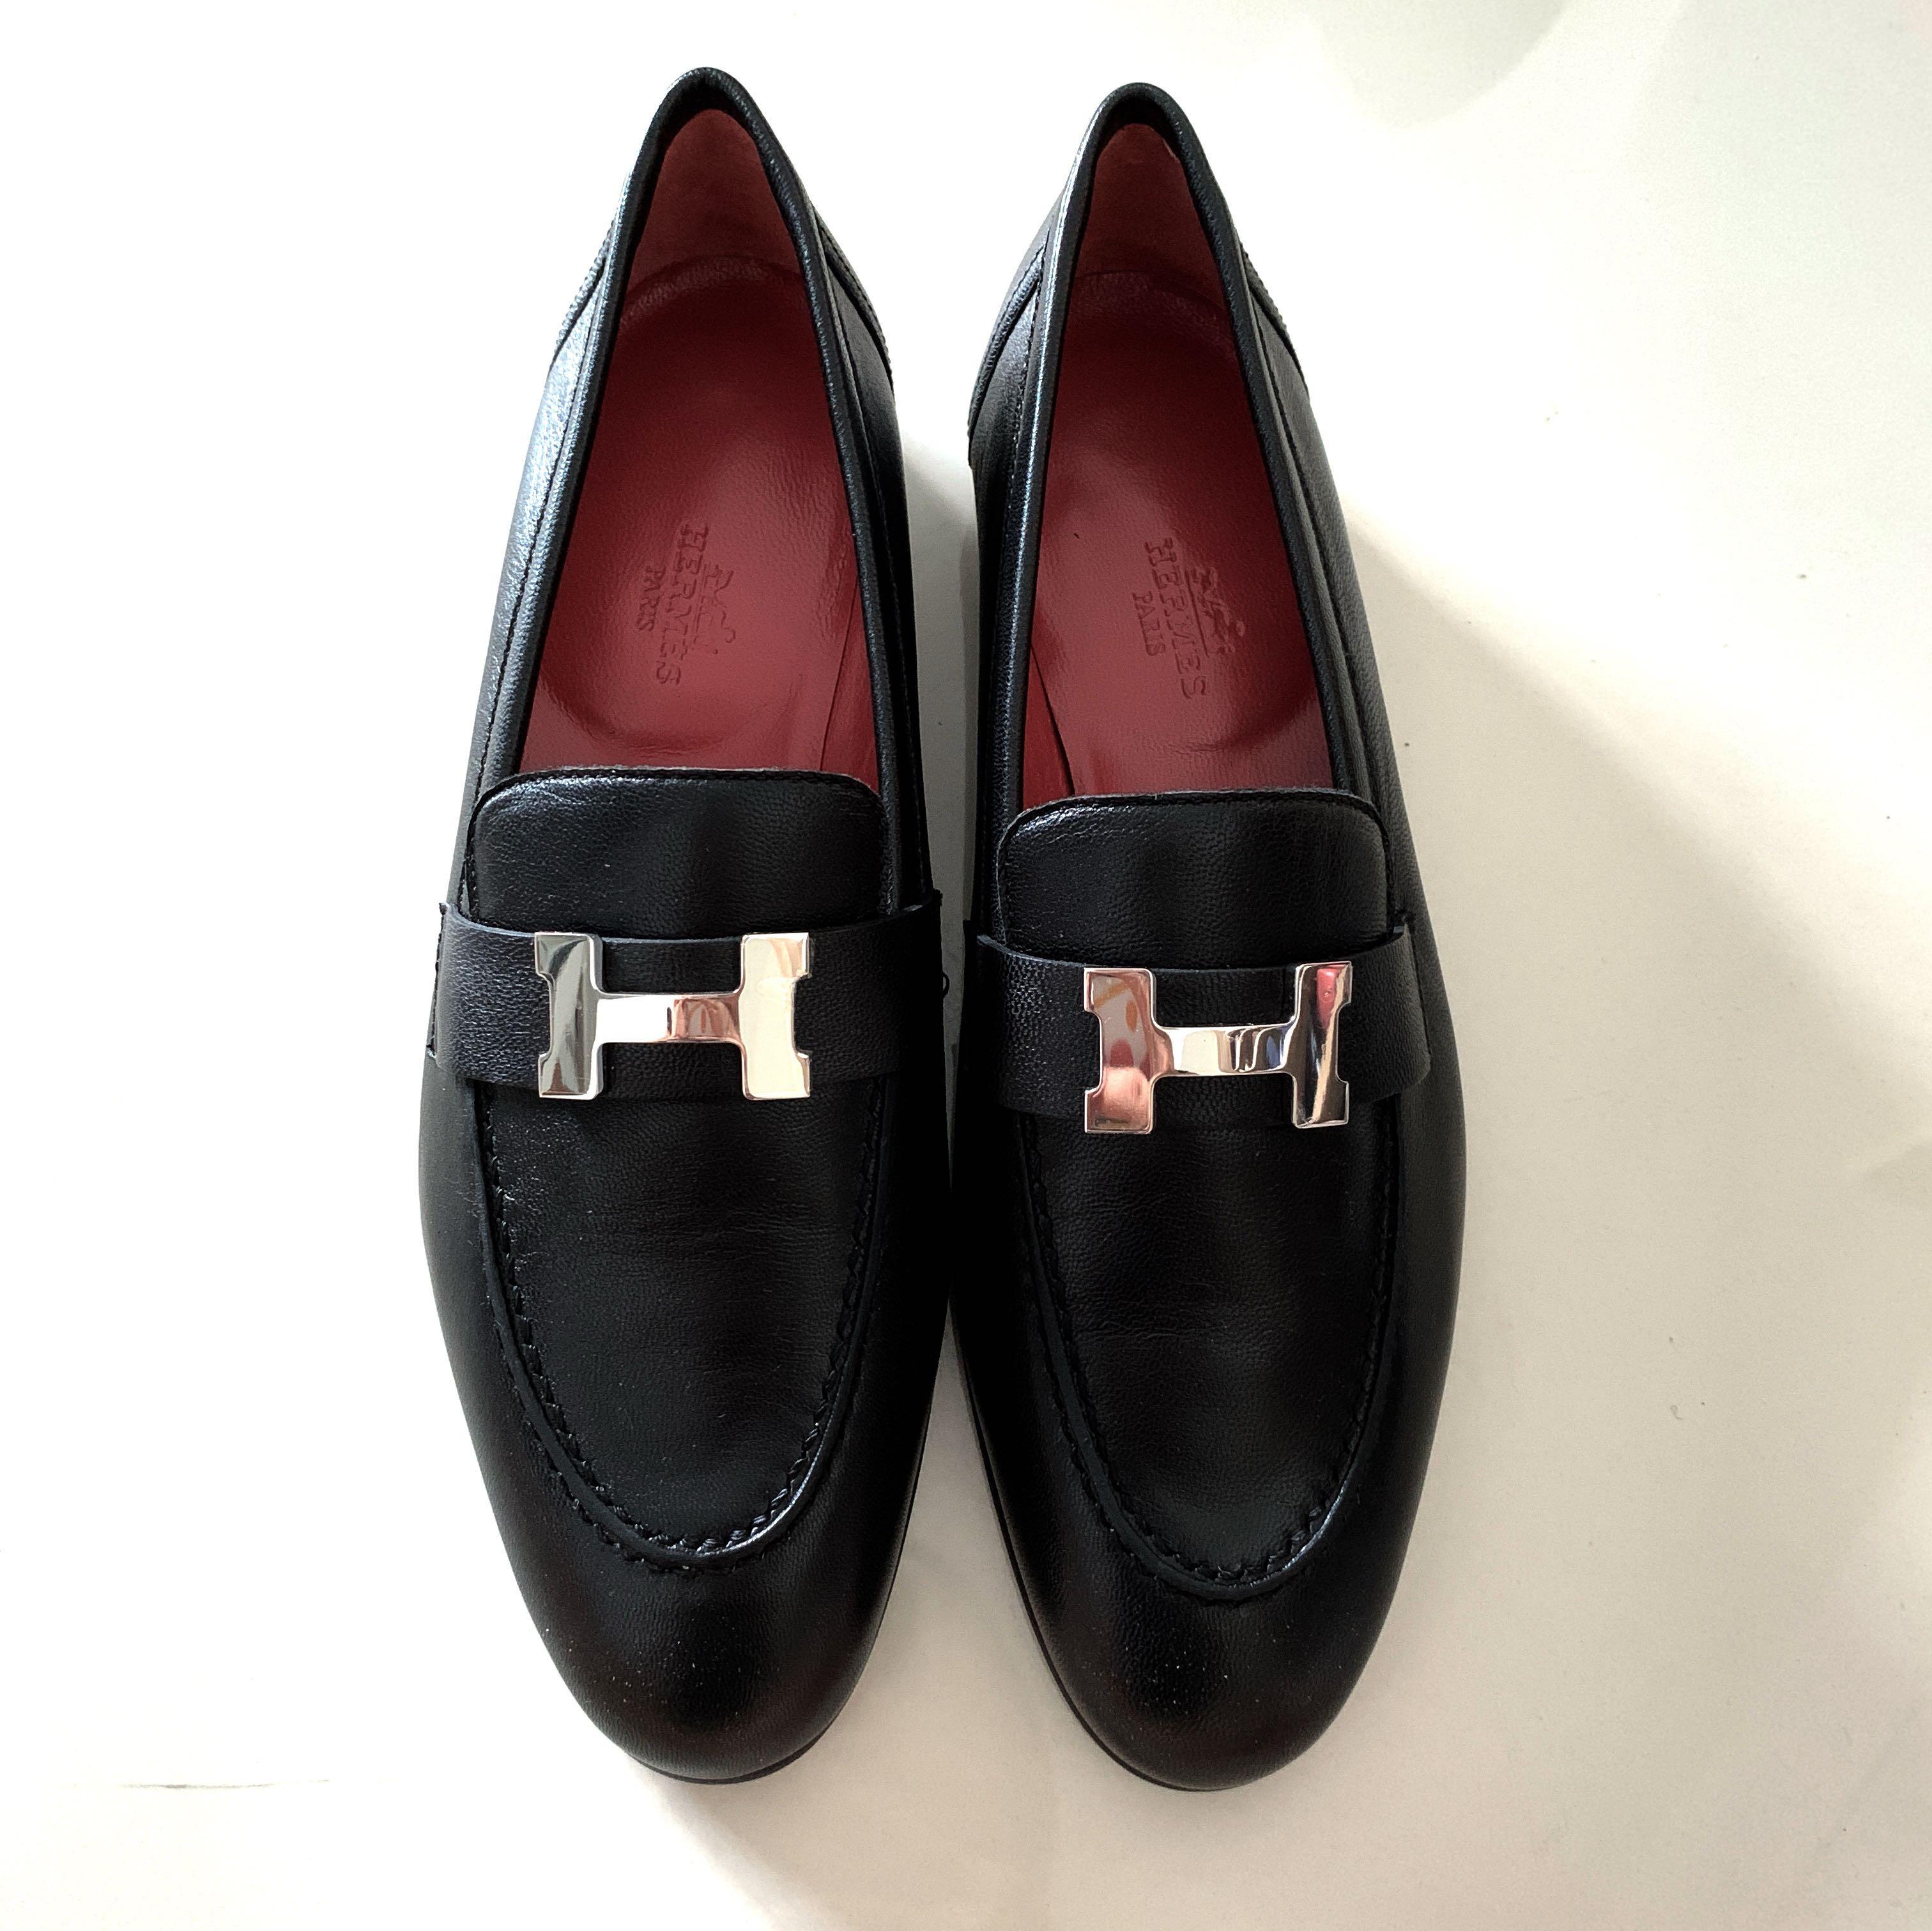 Hermes Paris Loafers Shoes Size 37.5 